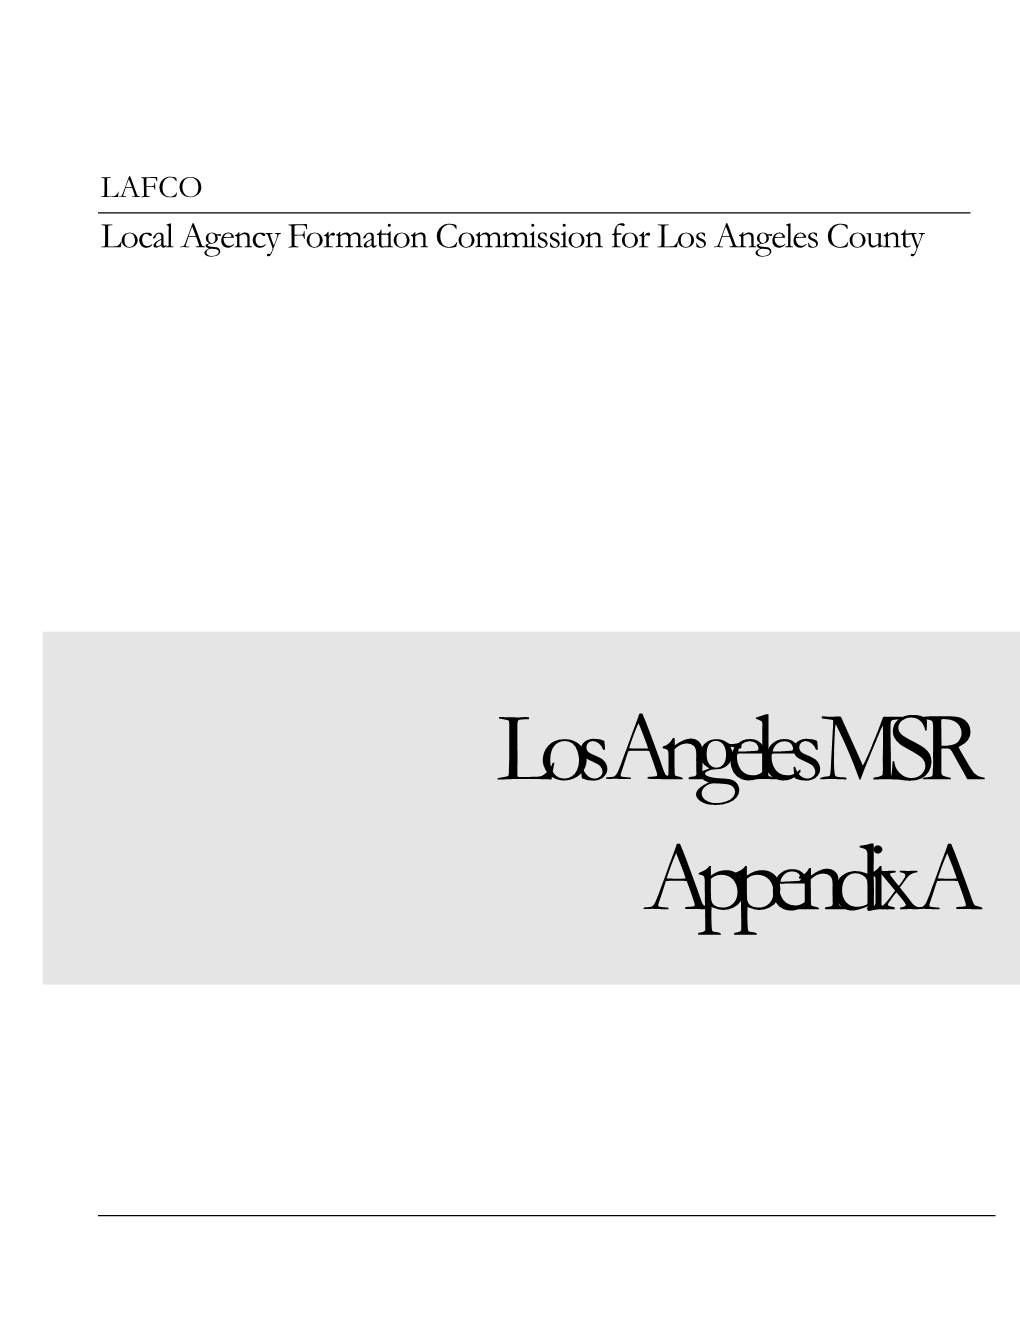 Los Angeles MSR Appendix A